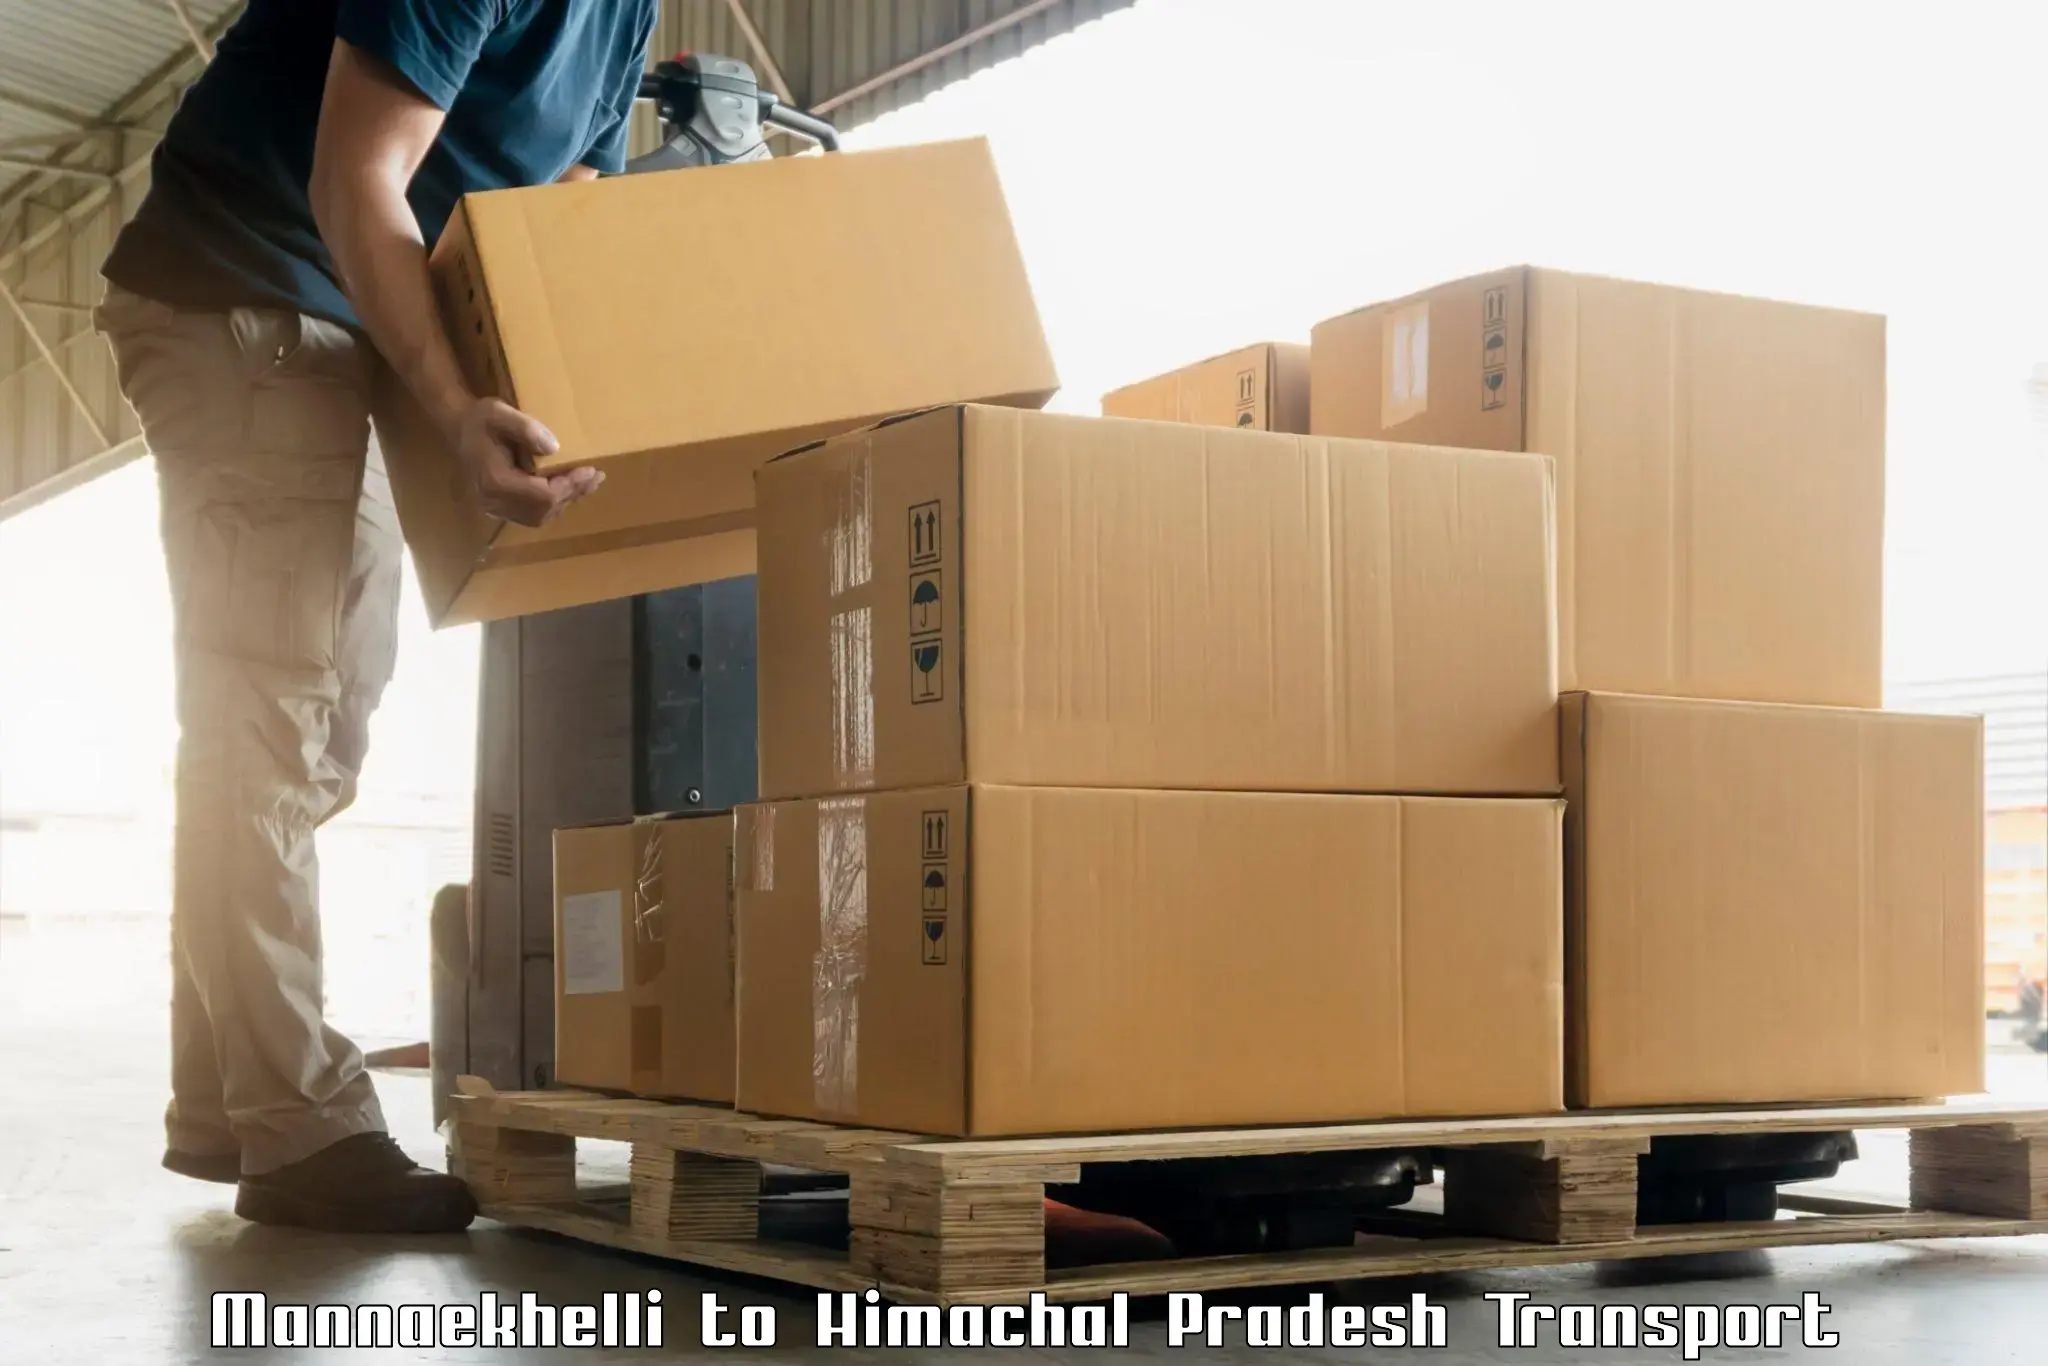 Vehicle transport services Mannaekhelli to Kinnaur